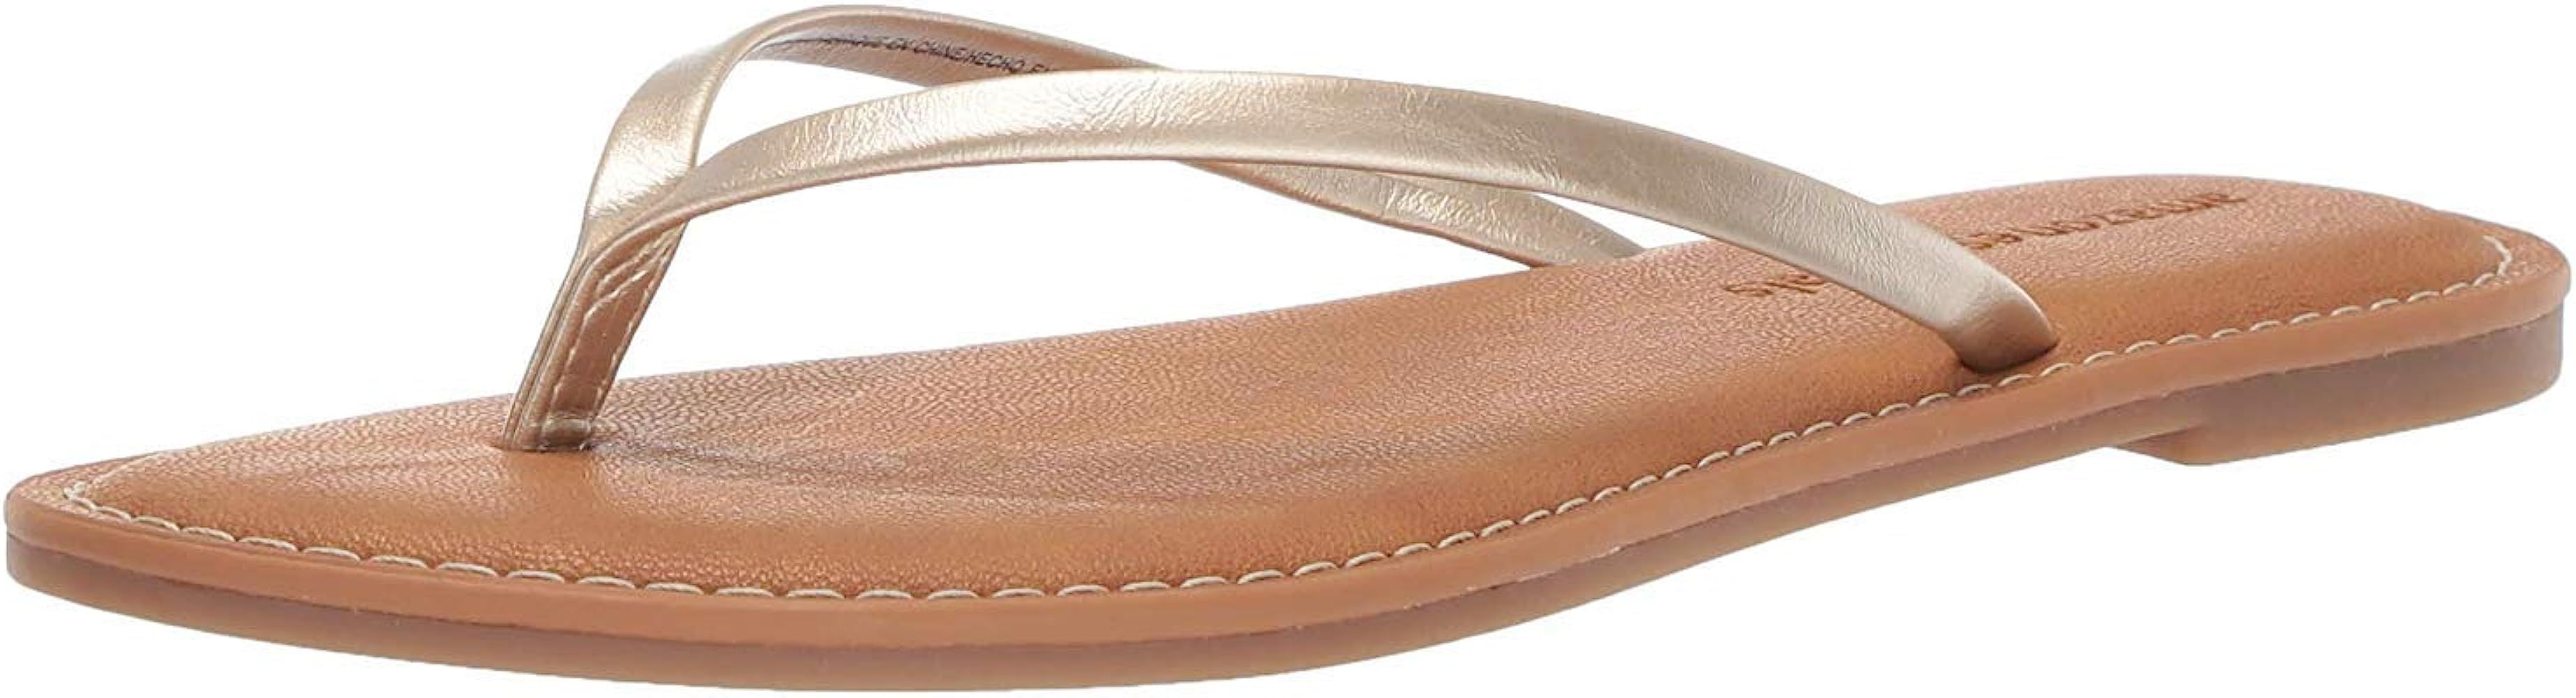 Women's Flip Flop Sandal | Amazon (US)